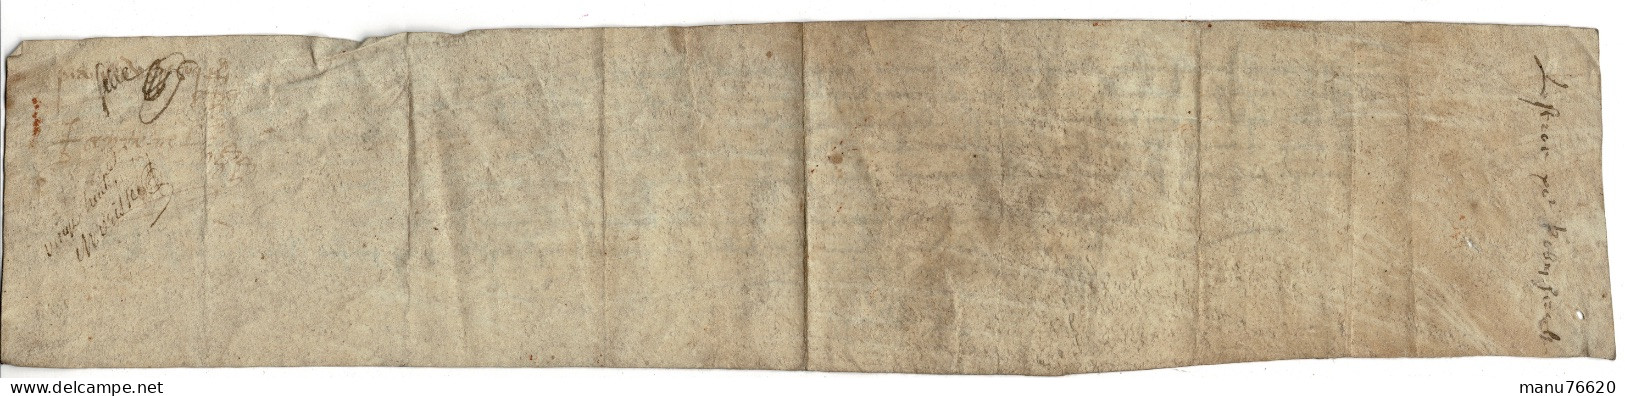 Ref 2 - RARE!, Lettre, Document Notarial , Le Havre Et Environs , écritures Très Anciennes , Papier épais. - Manuscripts